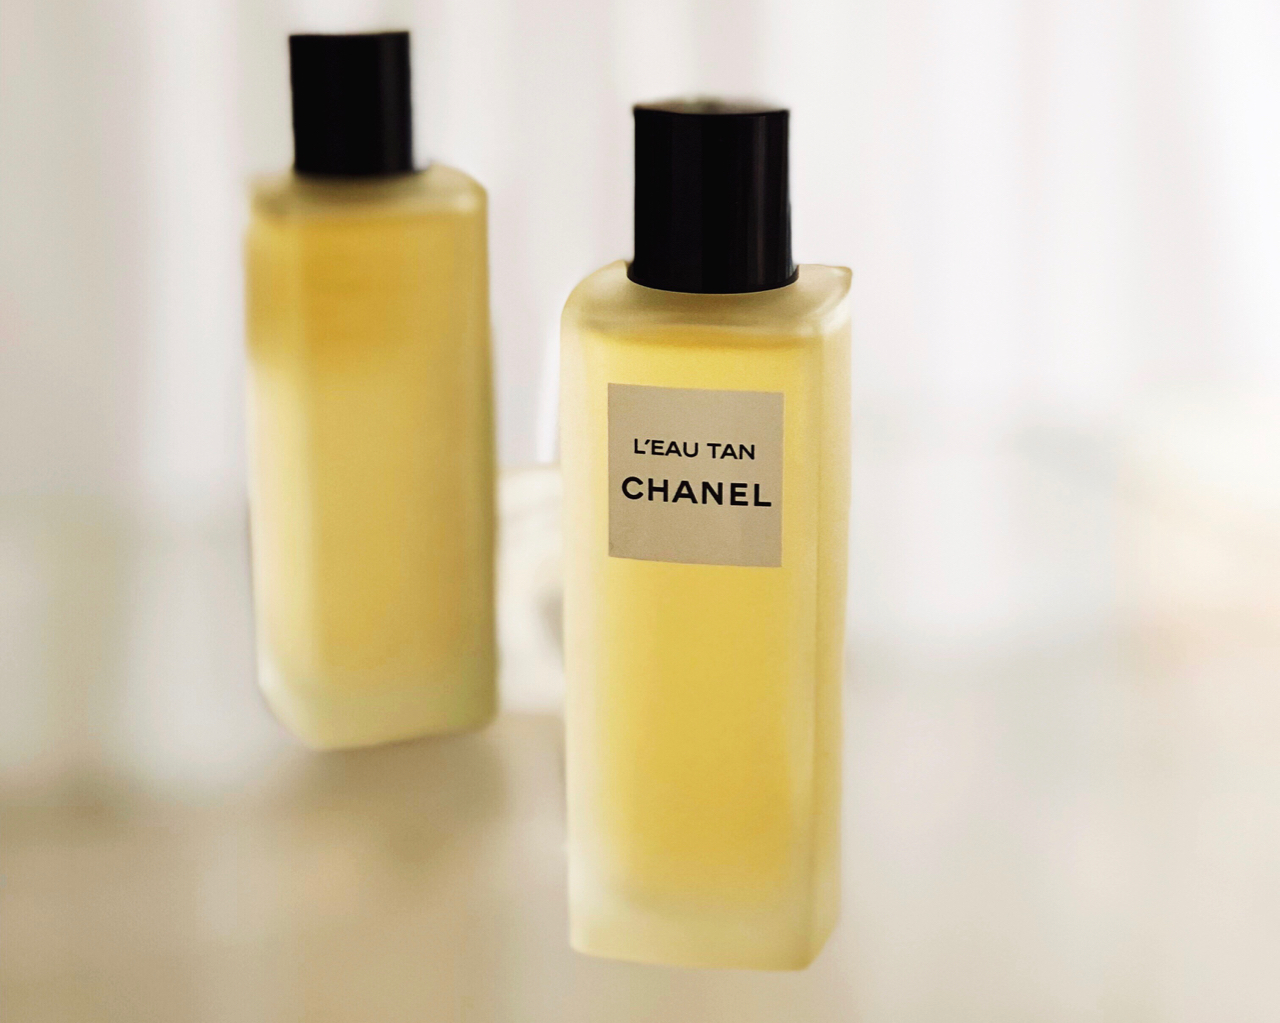 Chanel L'Eau Tan — Beauty Bible